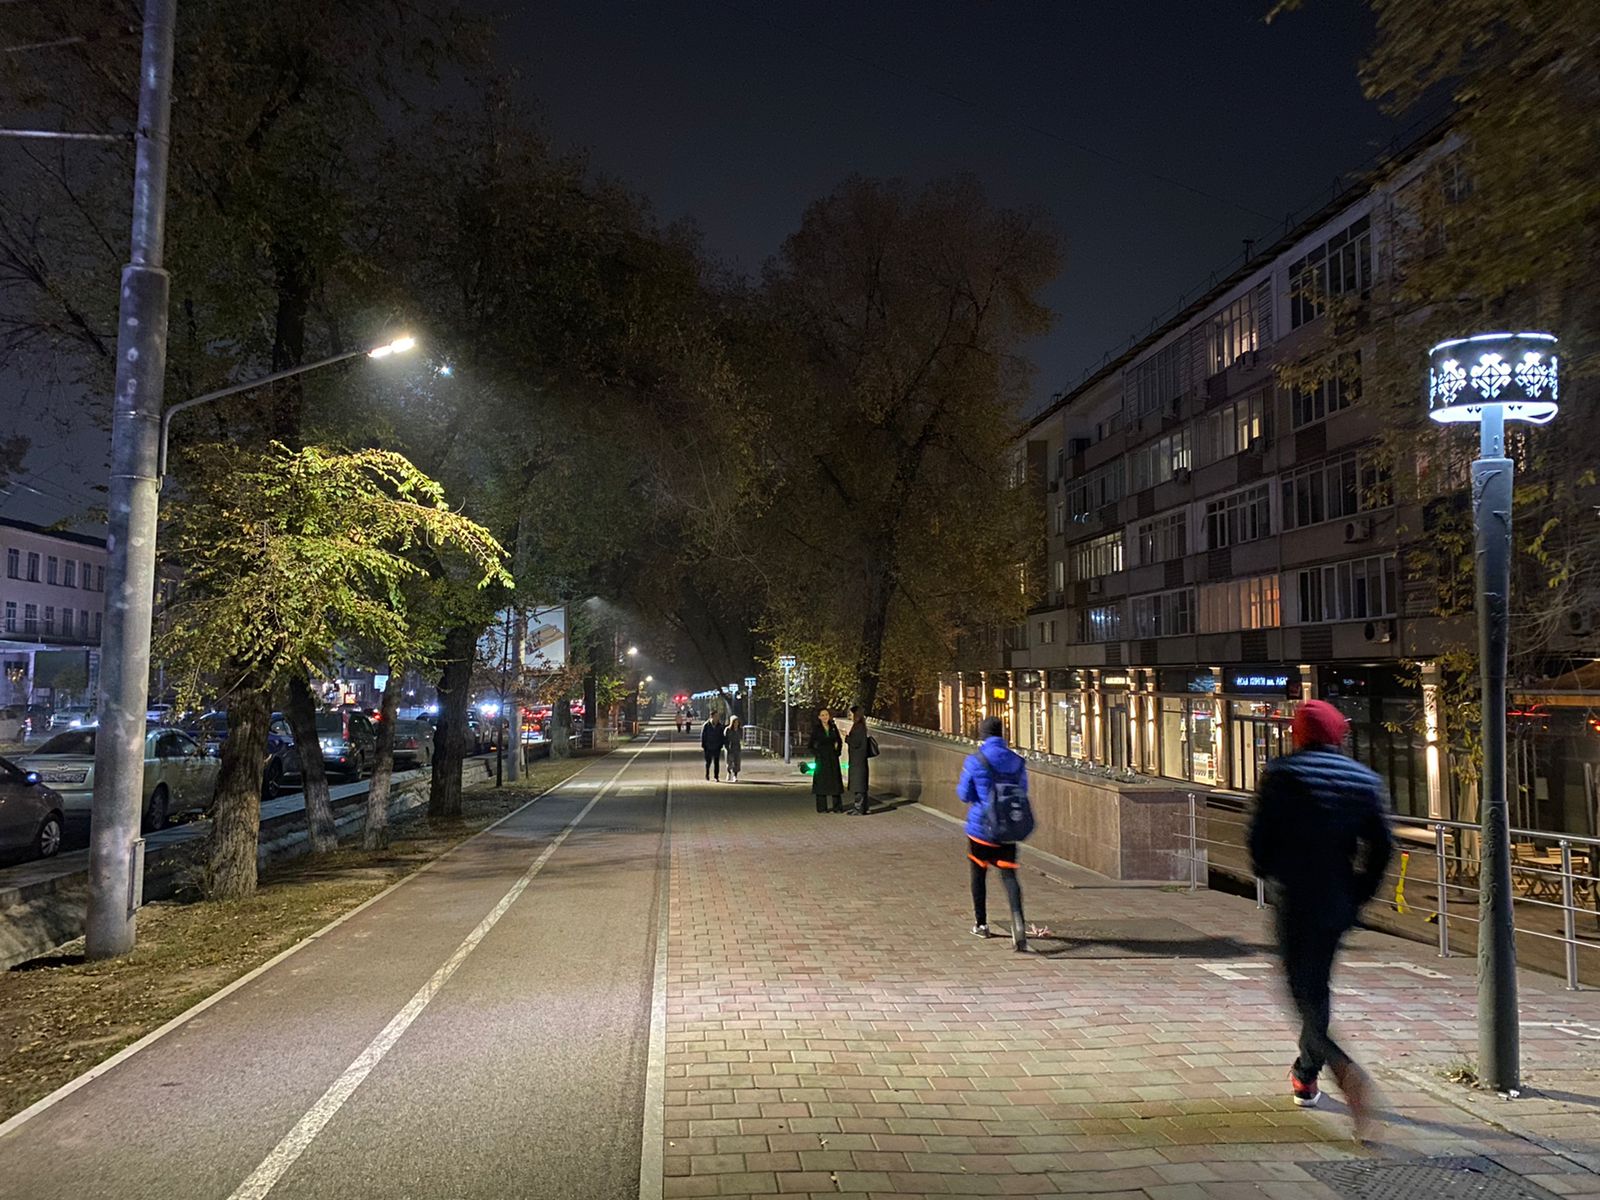 214 антивандальных торшерных светильников установили в Алматы